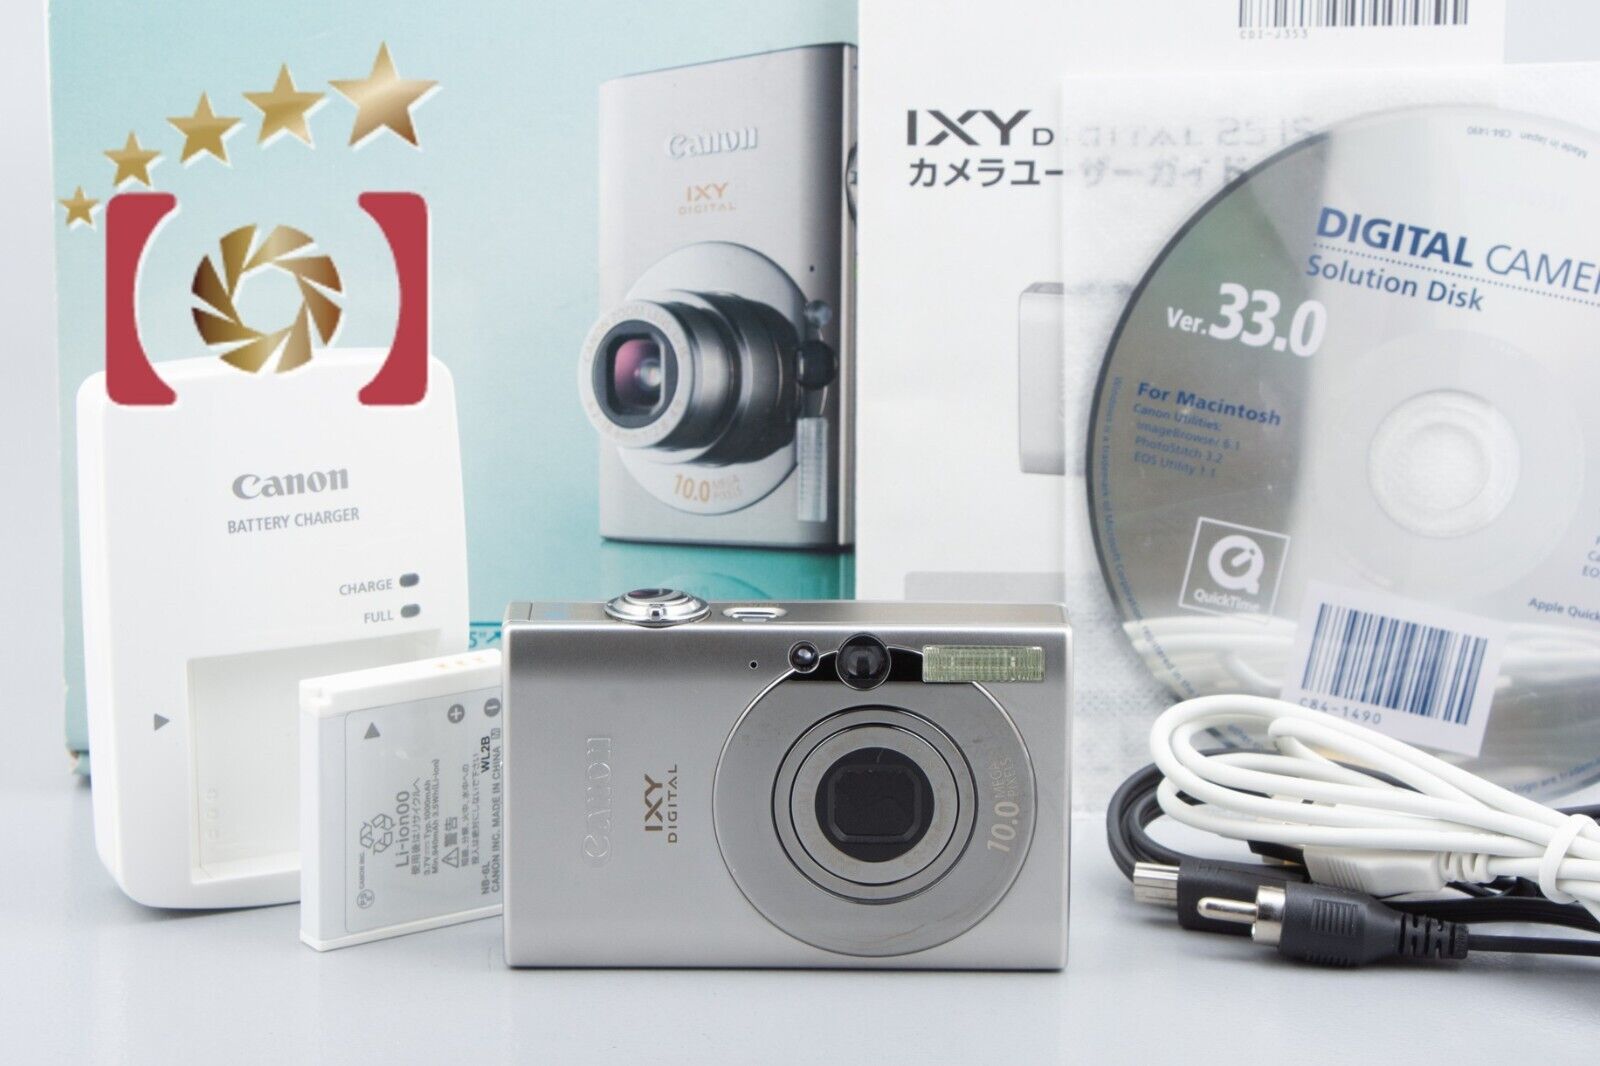 Canon IXY DIGITAL 25 IS Silver 10.0 MP Digital Camera w/ Box